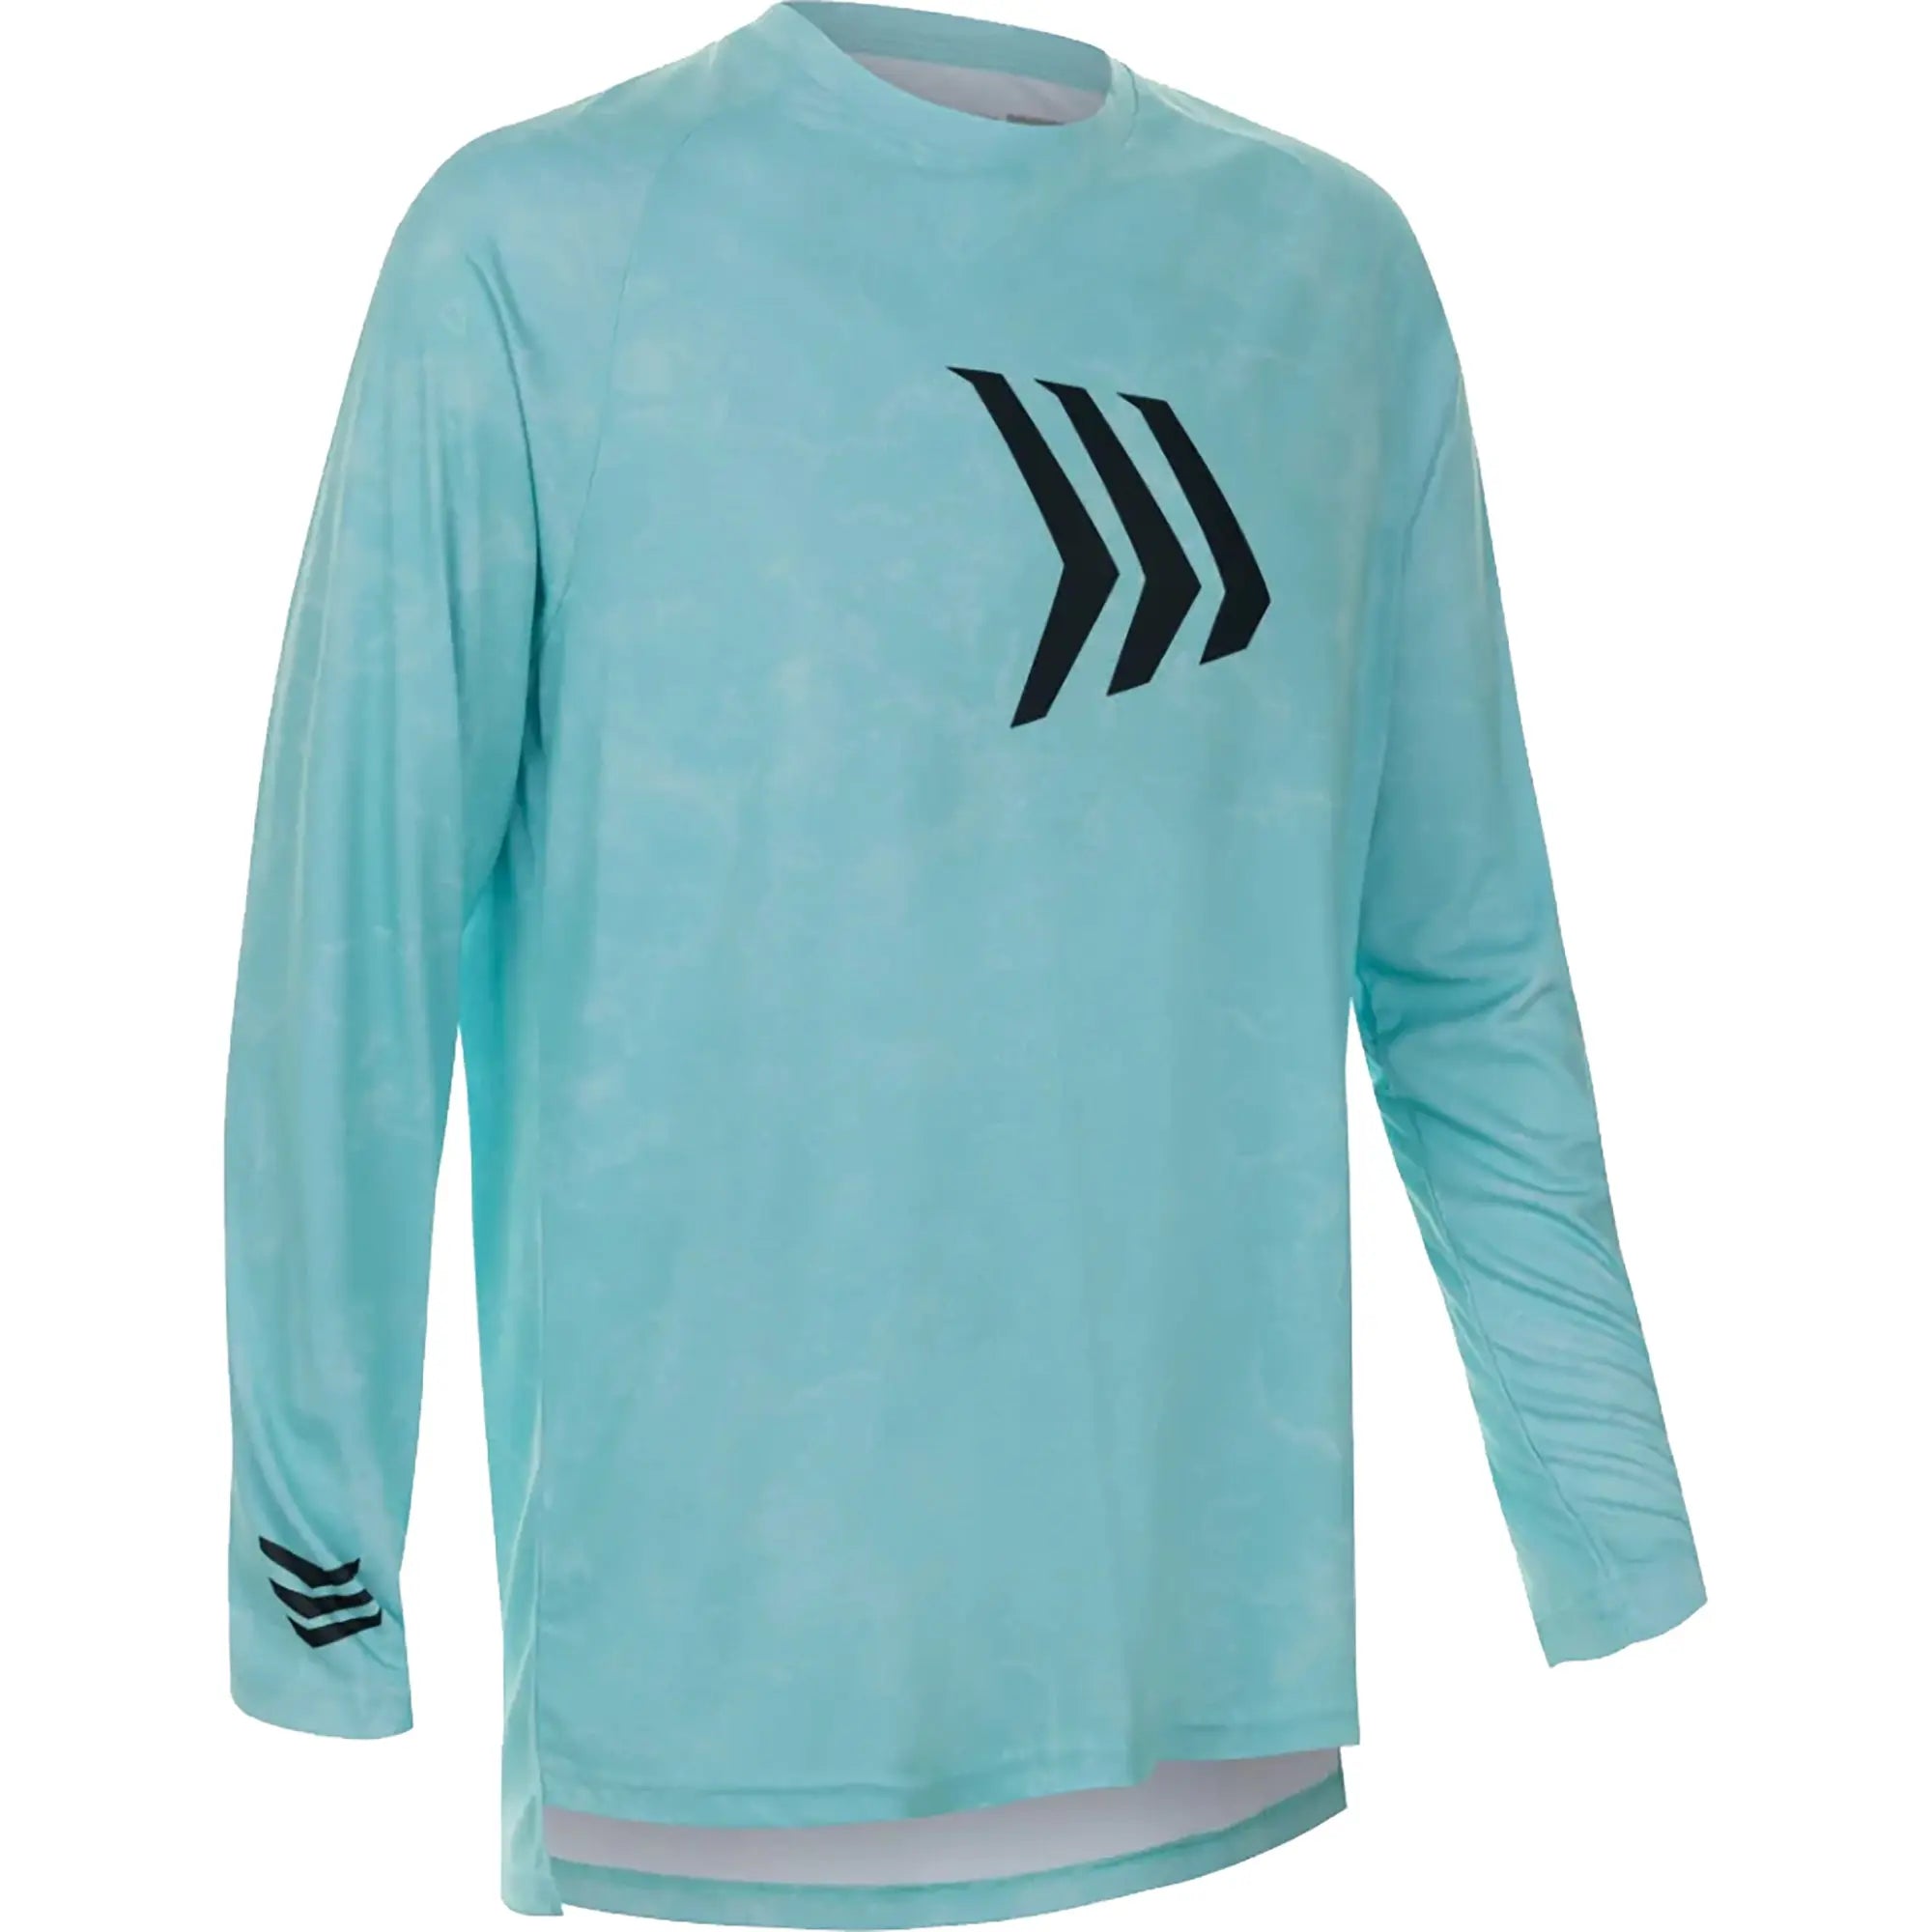 Gillz Contender Series Asslt UV Long Sleeve T-Shirt - Aruba Blue XL